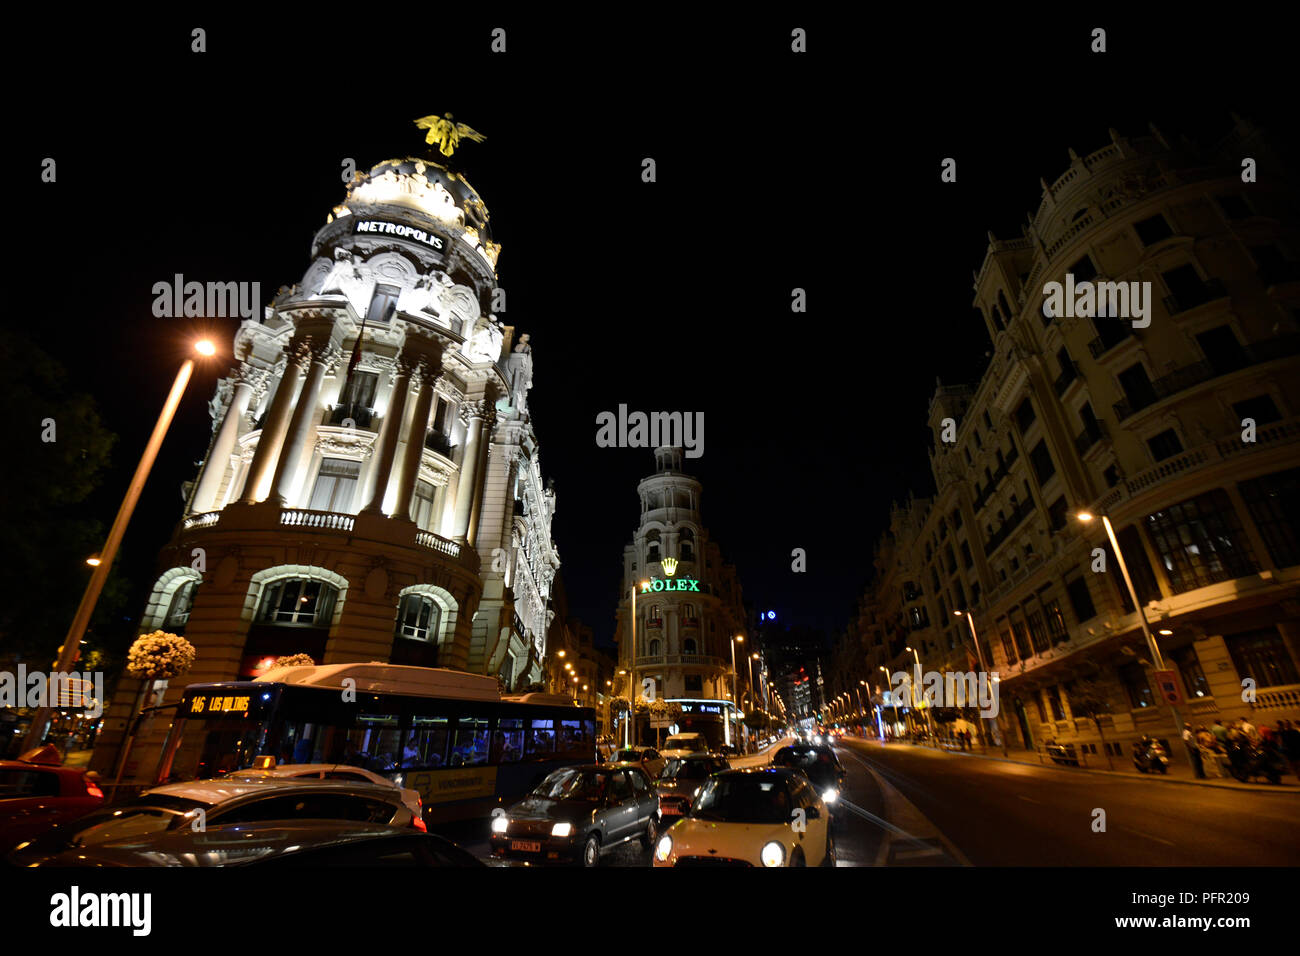 Metropolis Building (Edificio Metropolis), Madrid, Spain Stock Photo